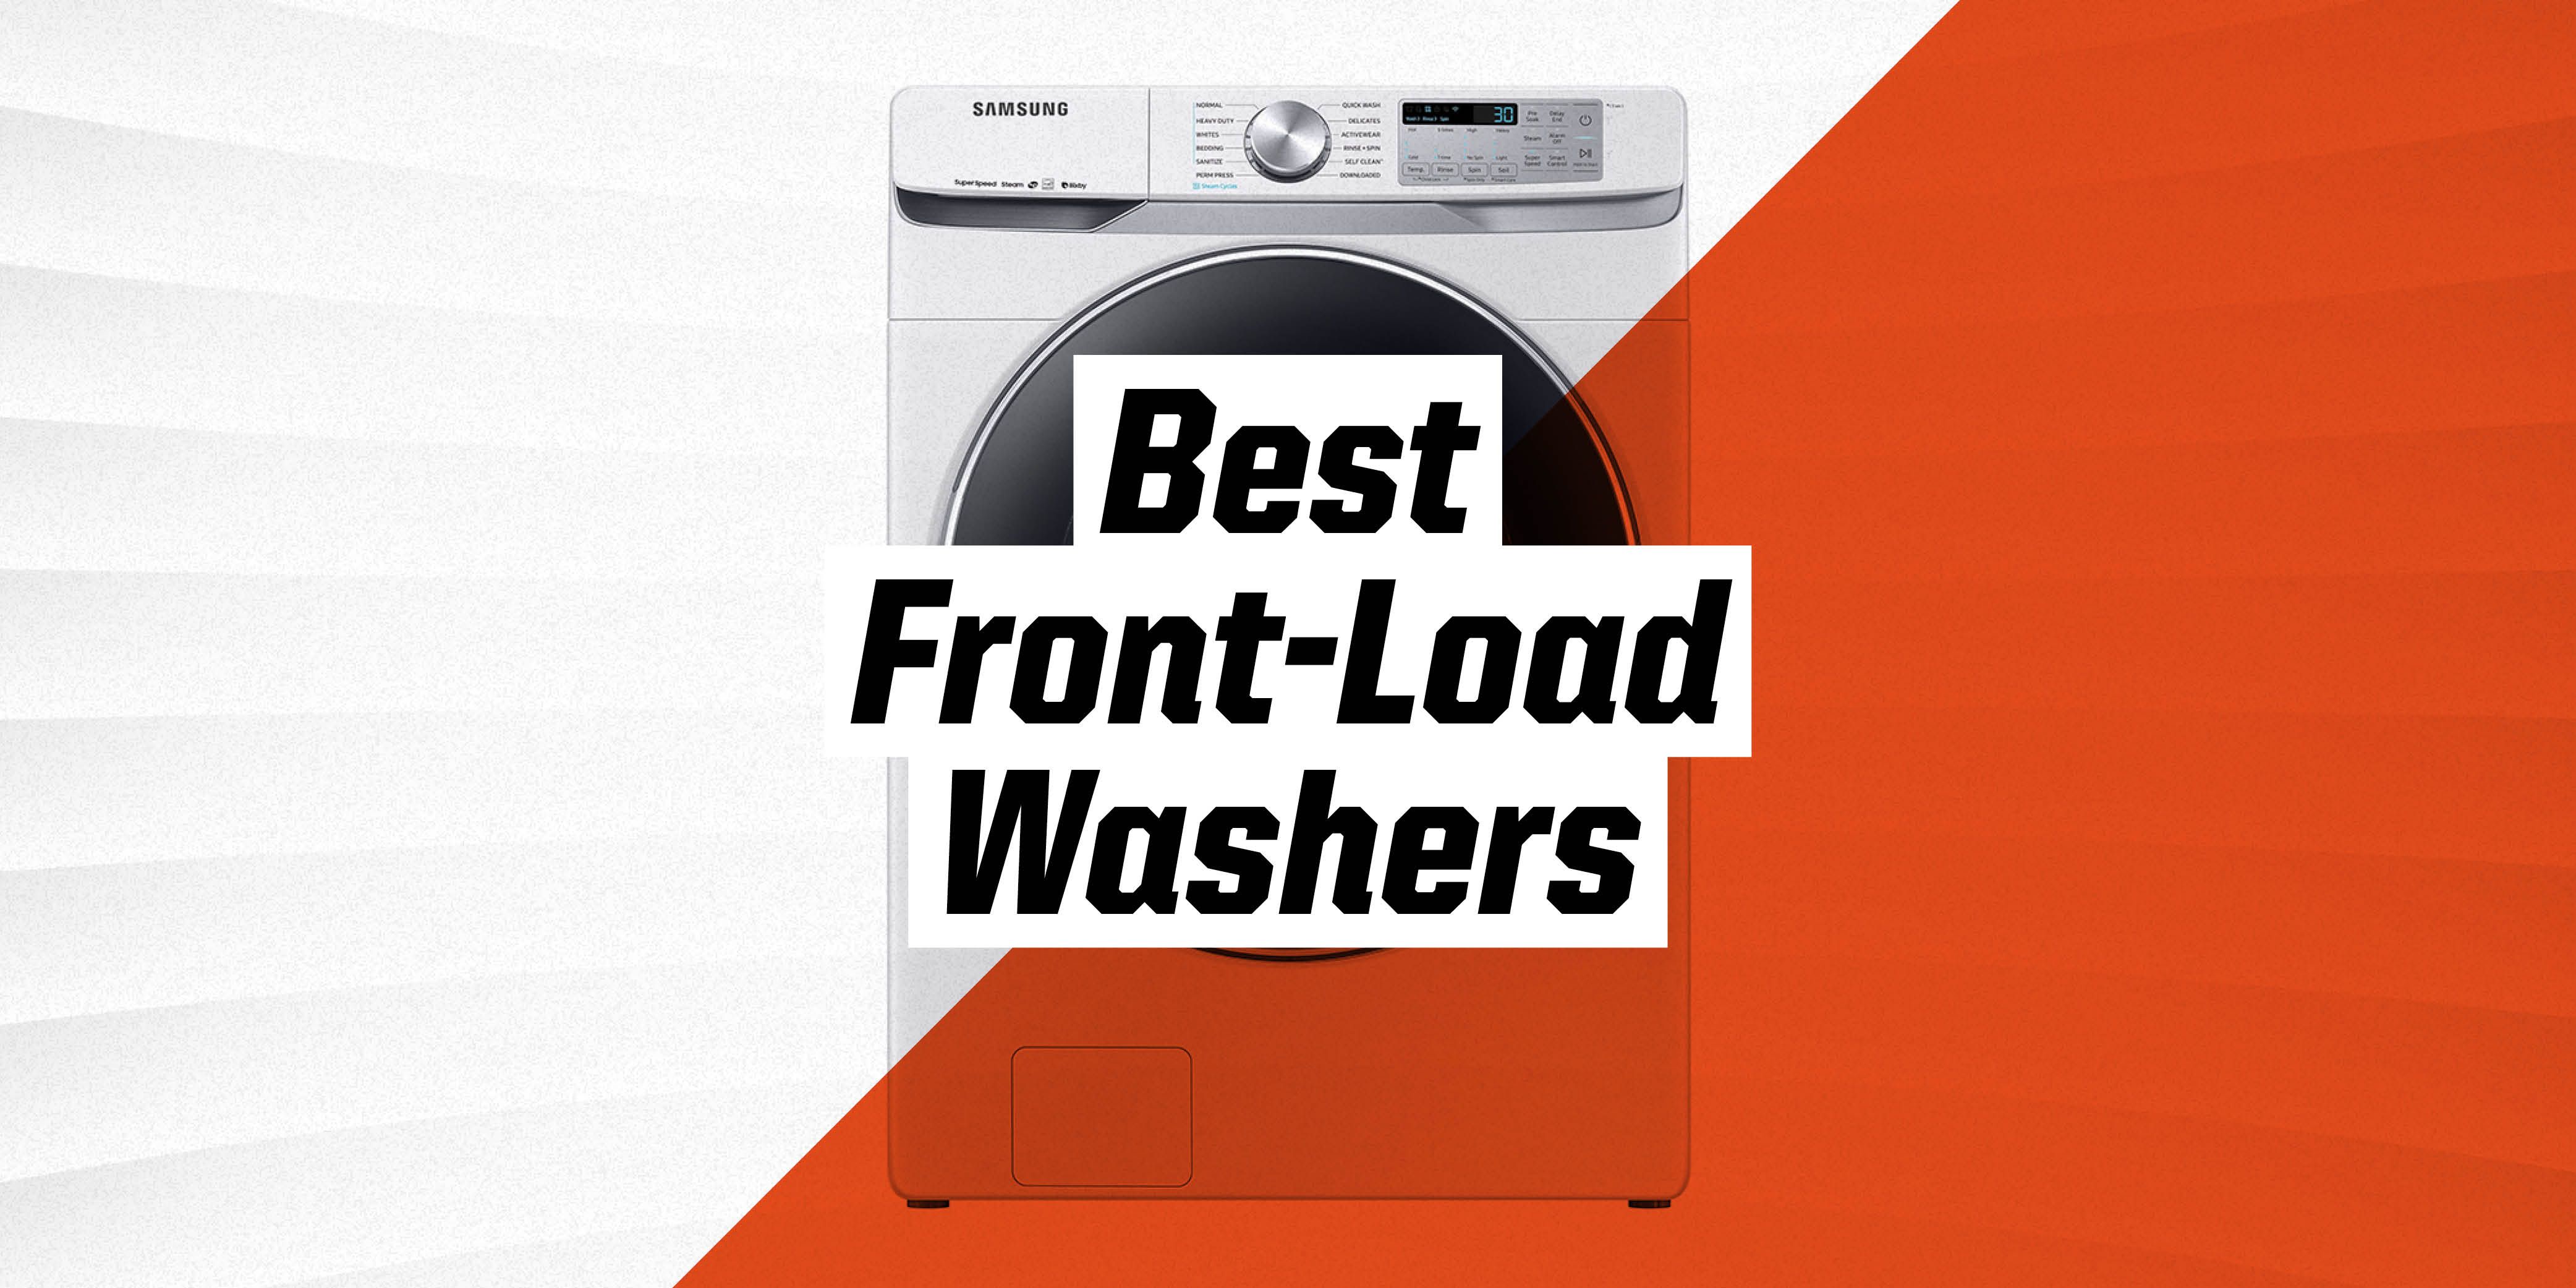 best top loader washing machine